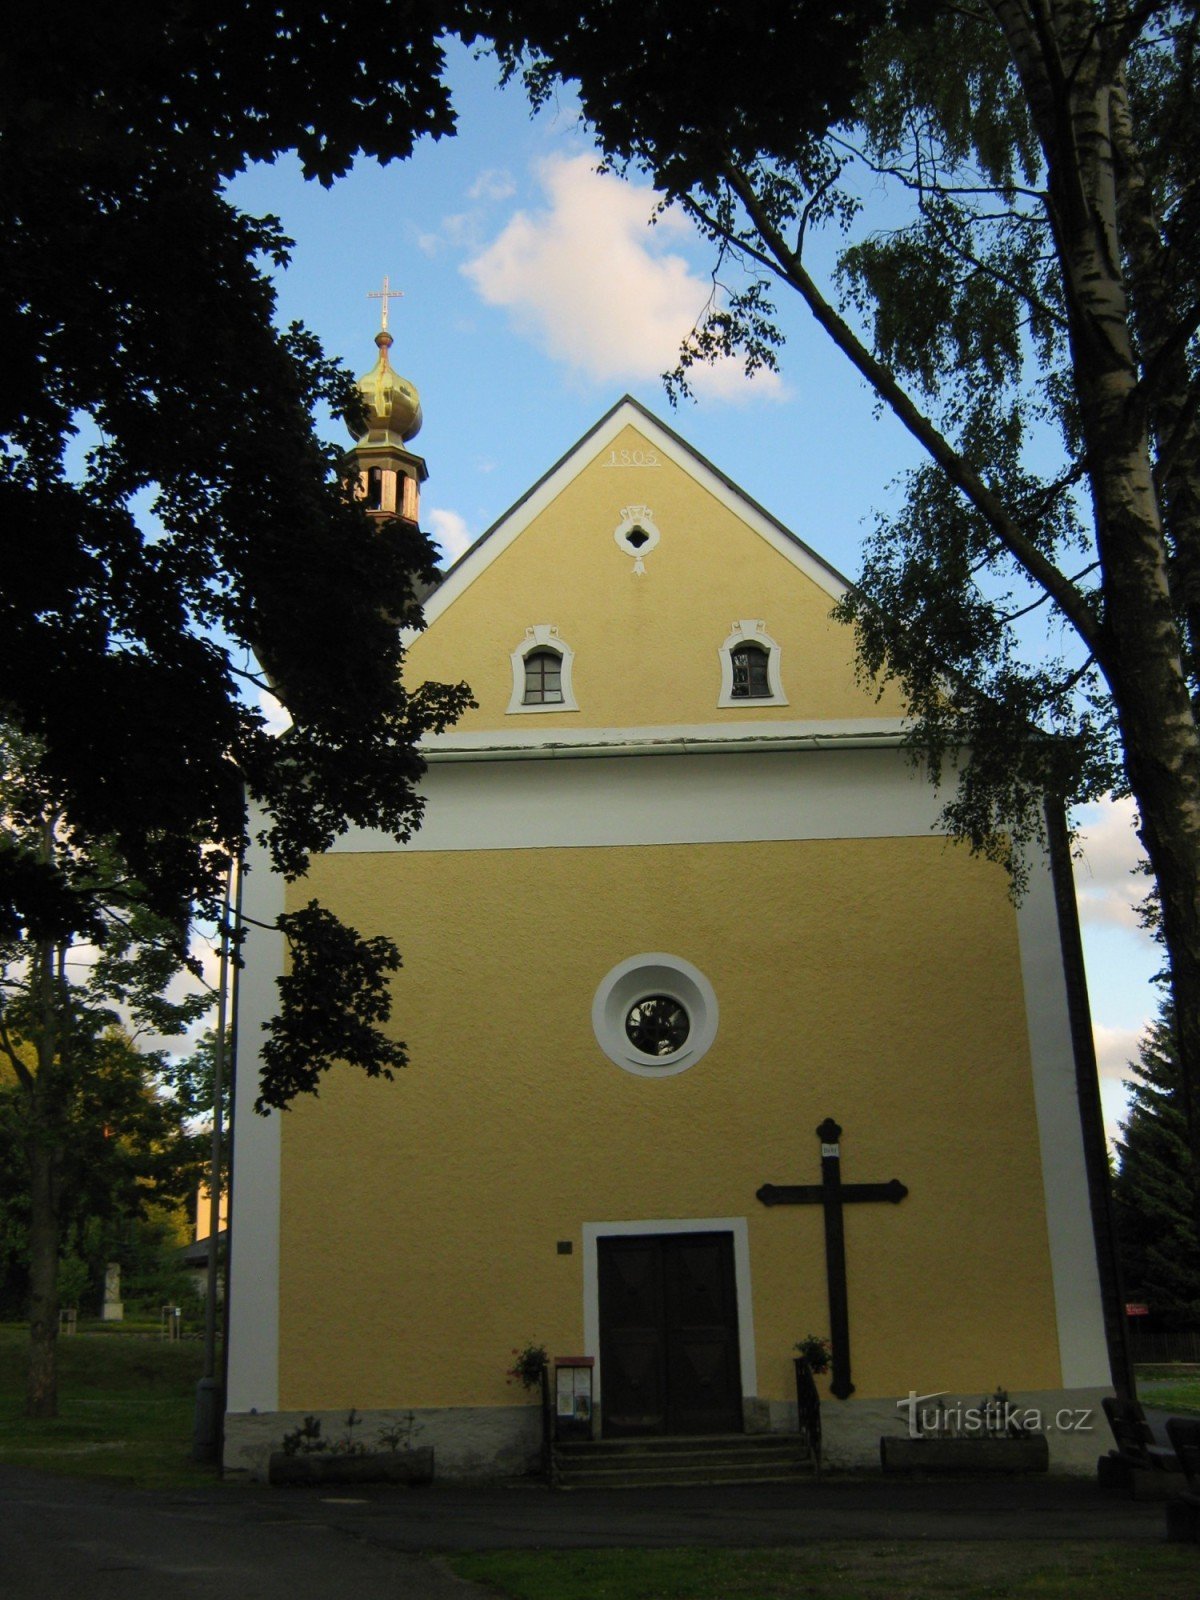 Srni - Église de St. Trinité